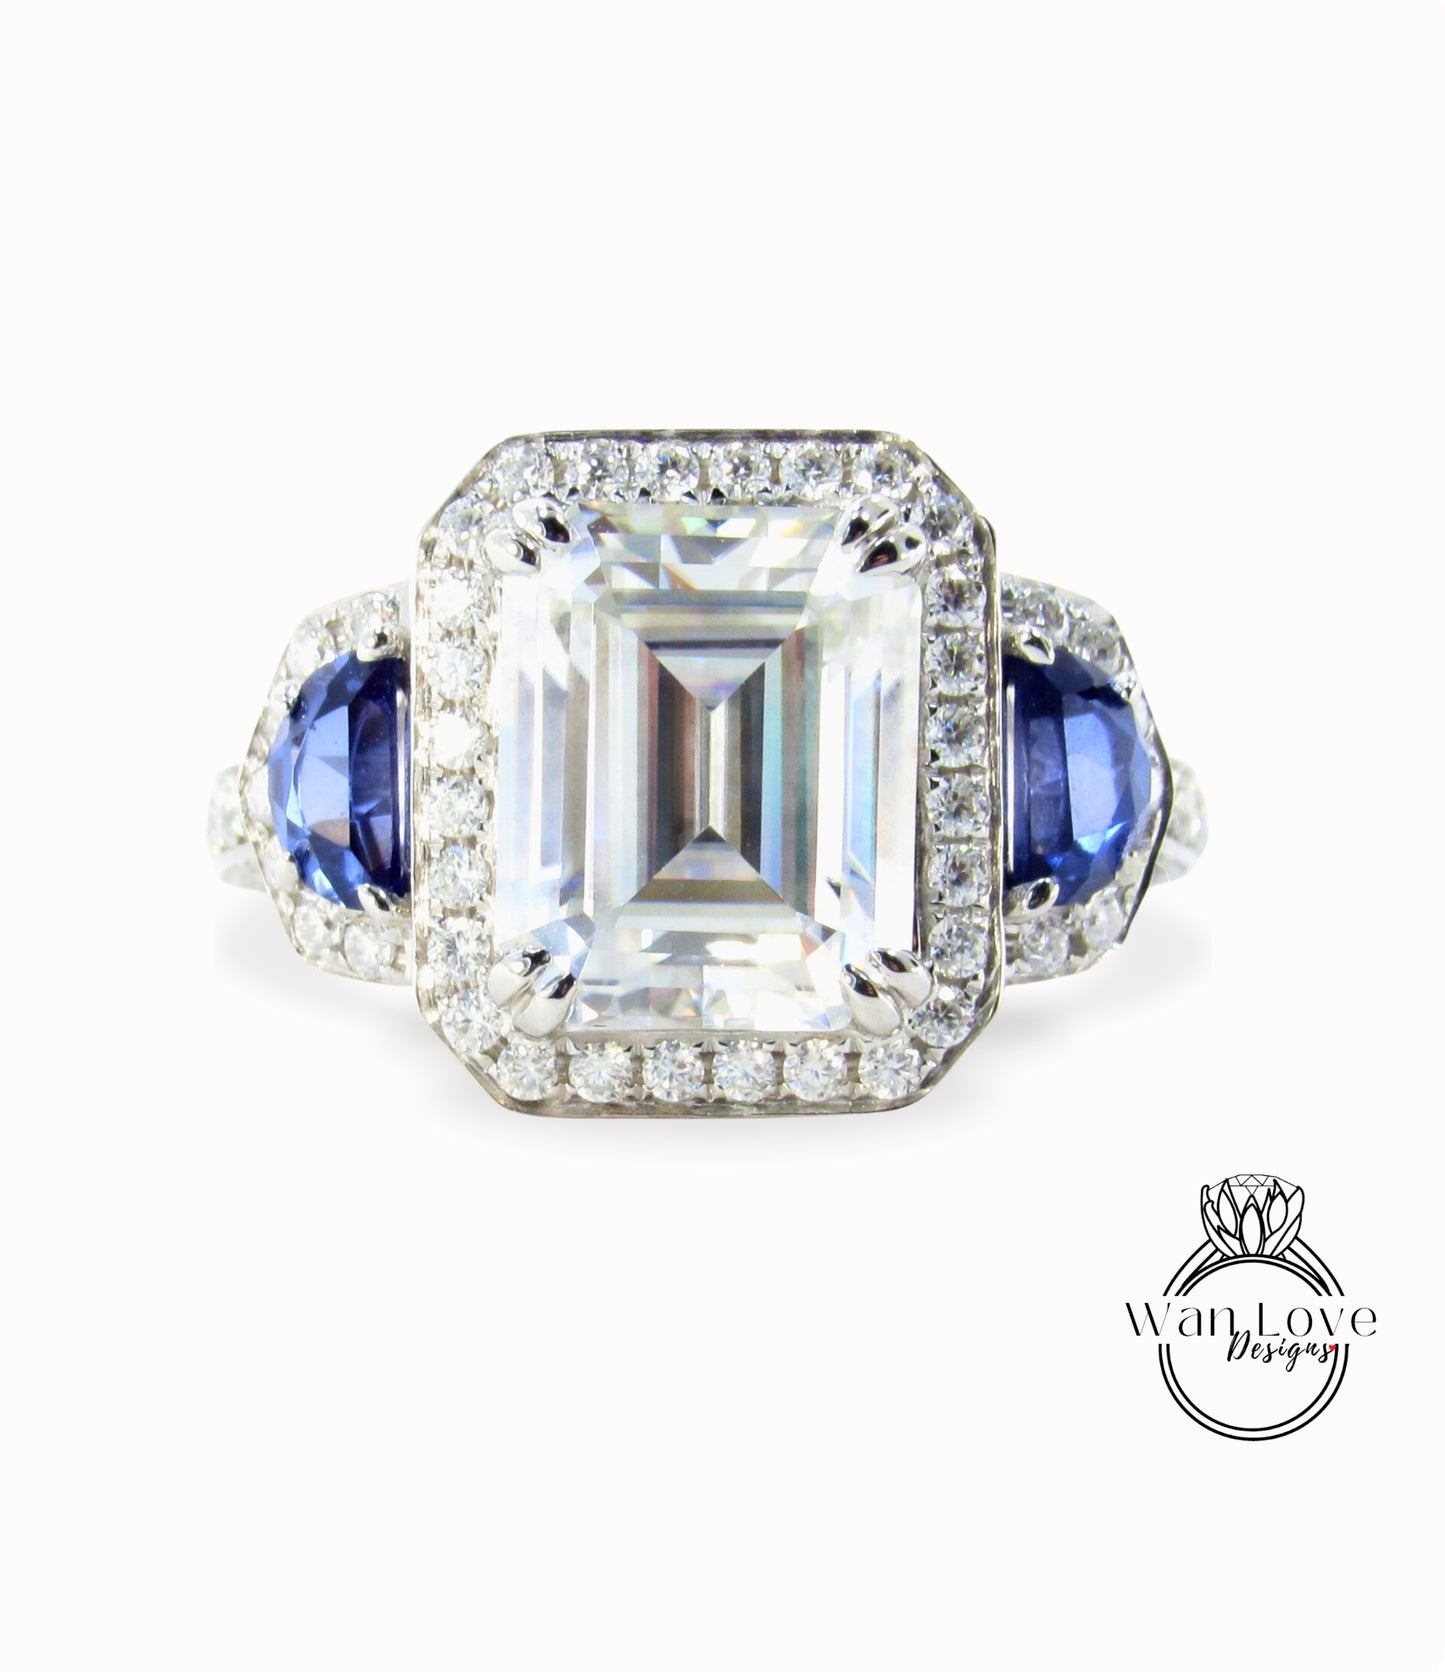 Inserzione personalizzata per Judy Moissanite e zaffiro blu Art deco mezza luna taglio trapezoidale anello di fidanzamento oro 3 pietre preziose anniversario anello unico taglio smeraldo